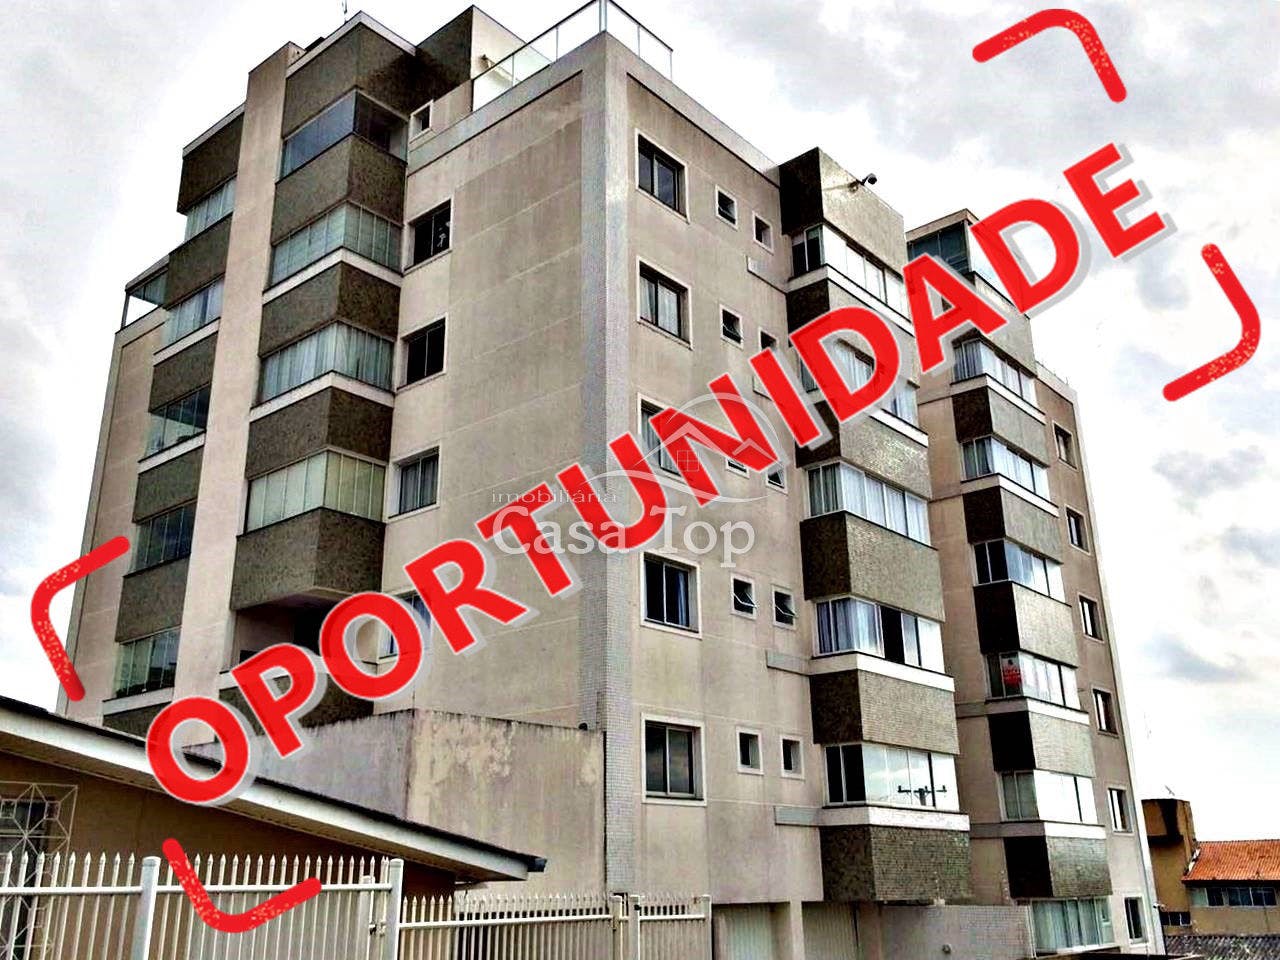 Cobertura duplex à venda Jardim América - Edifício San Lorenzo